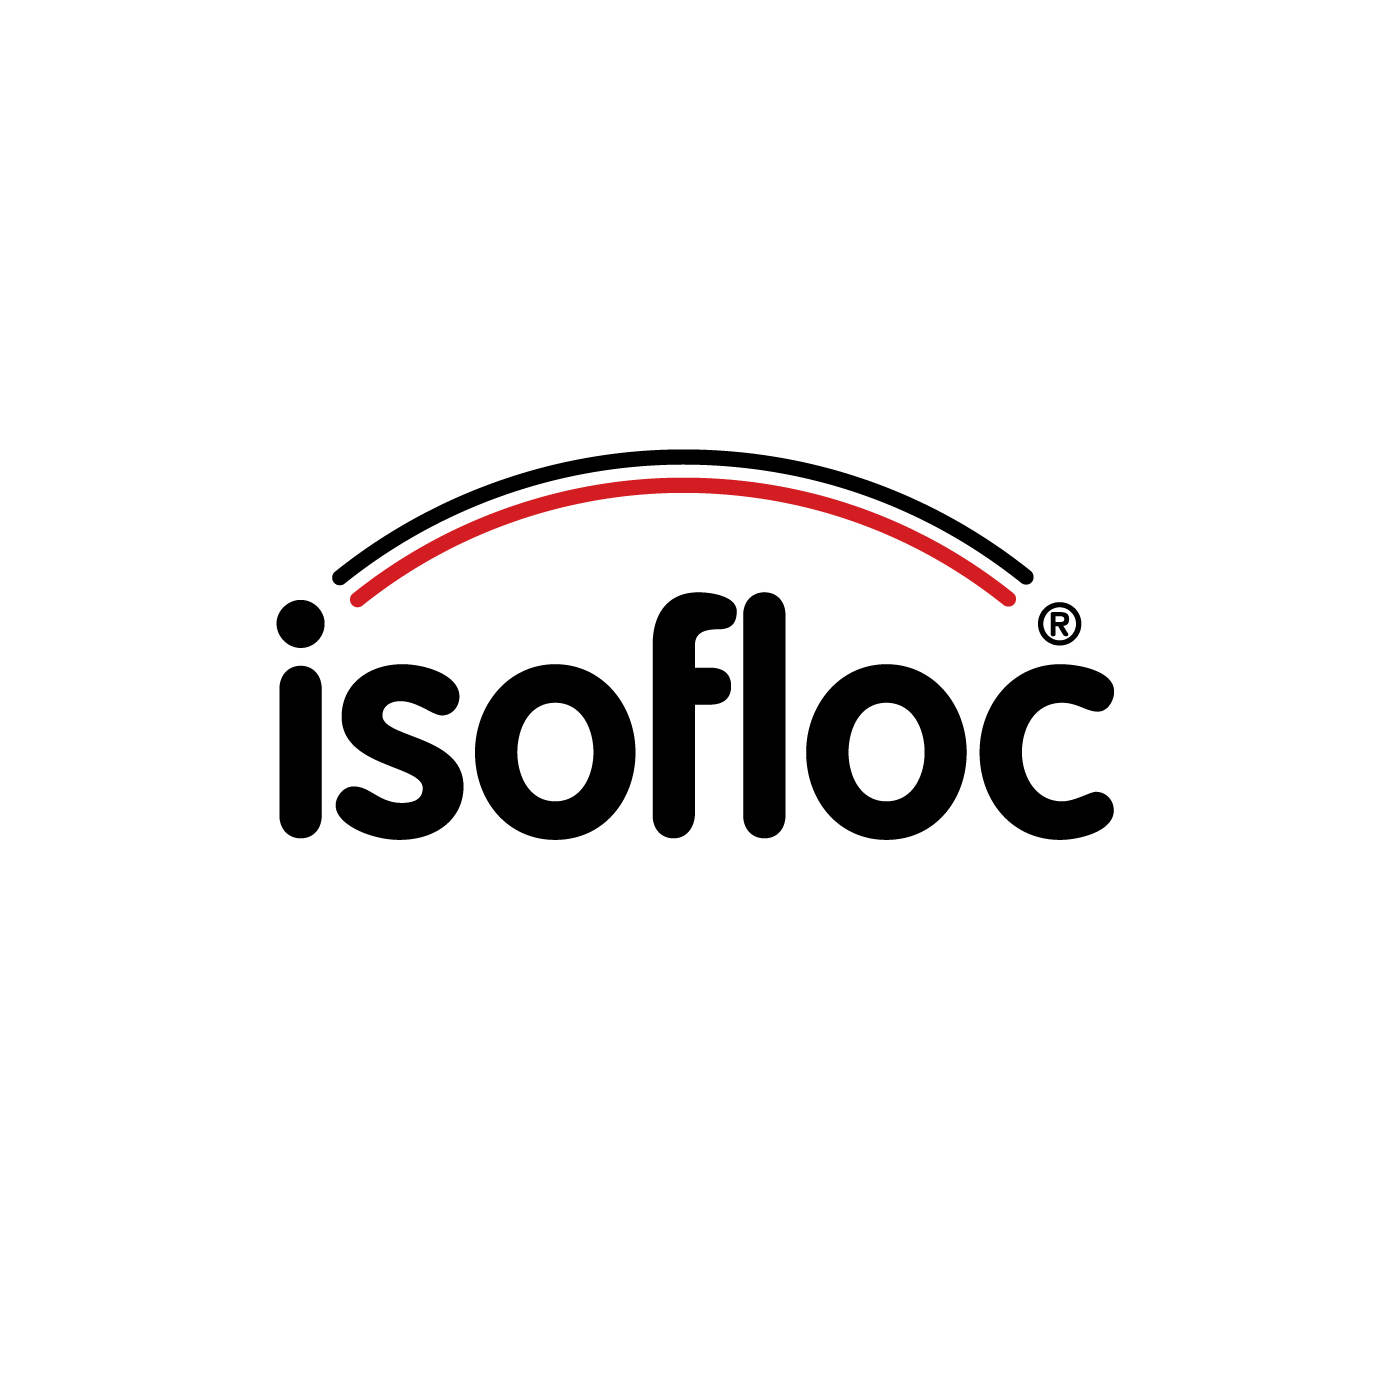 Isofloc